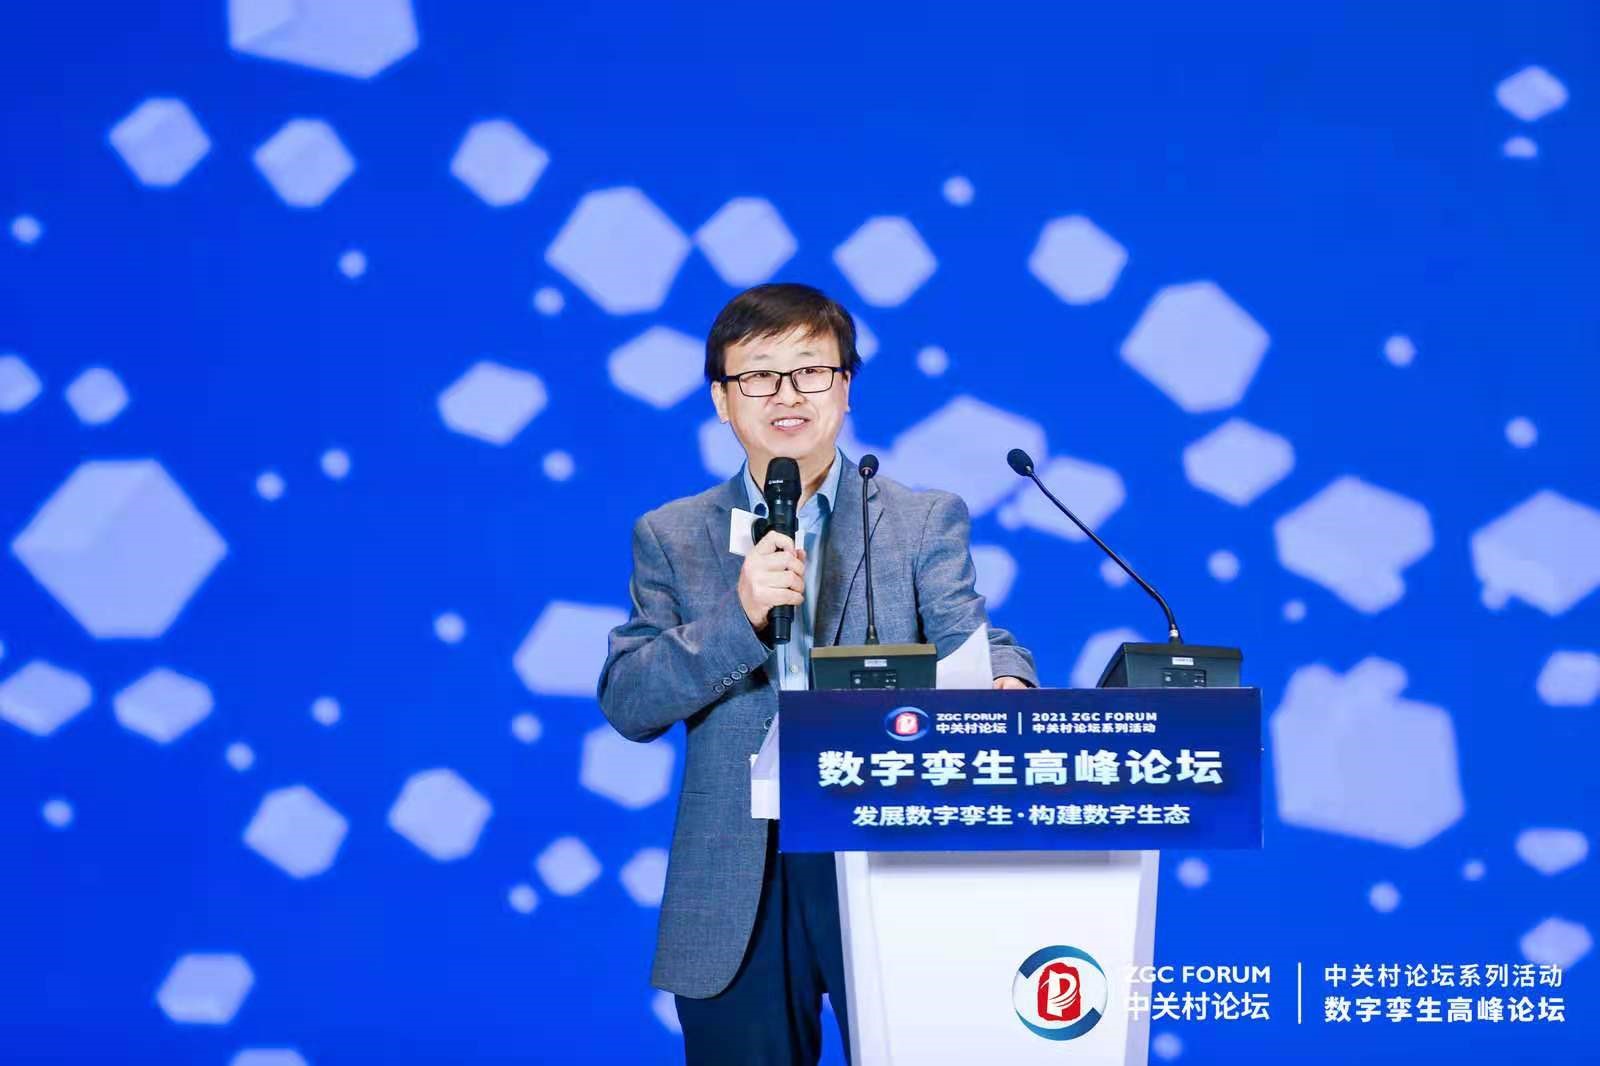 赛智时代CEO赵刚博士受邀参加“中关村论坛·数字孪生高峰论坛”